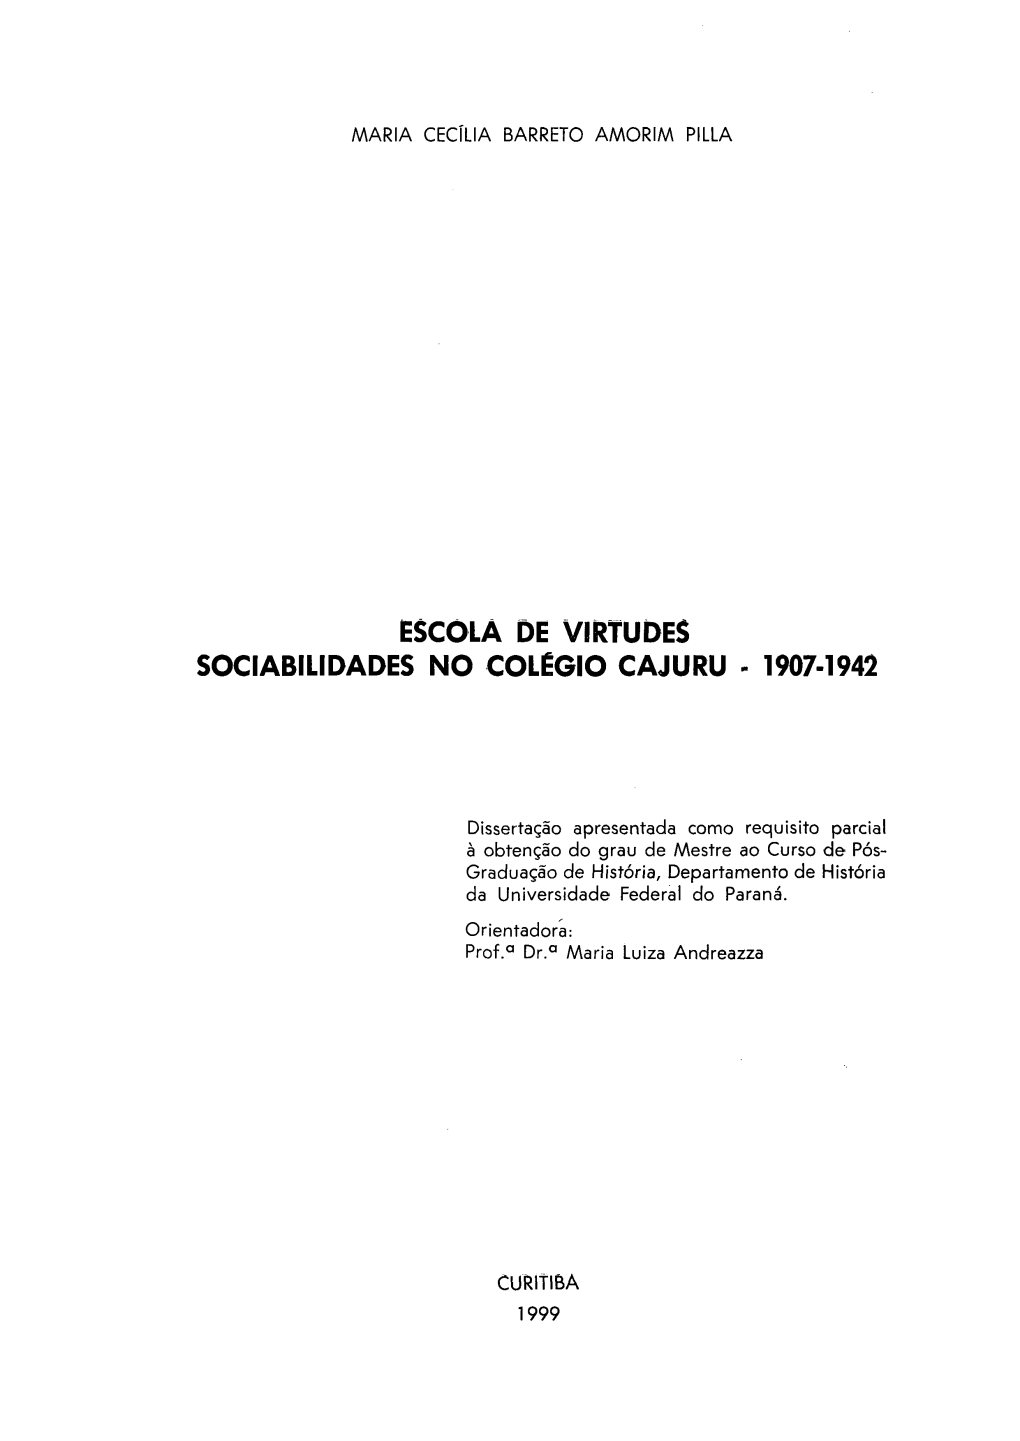 Escola De Virtudes Sociabilidades No Colégio Cajuru - 1907-1942